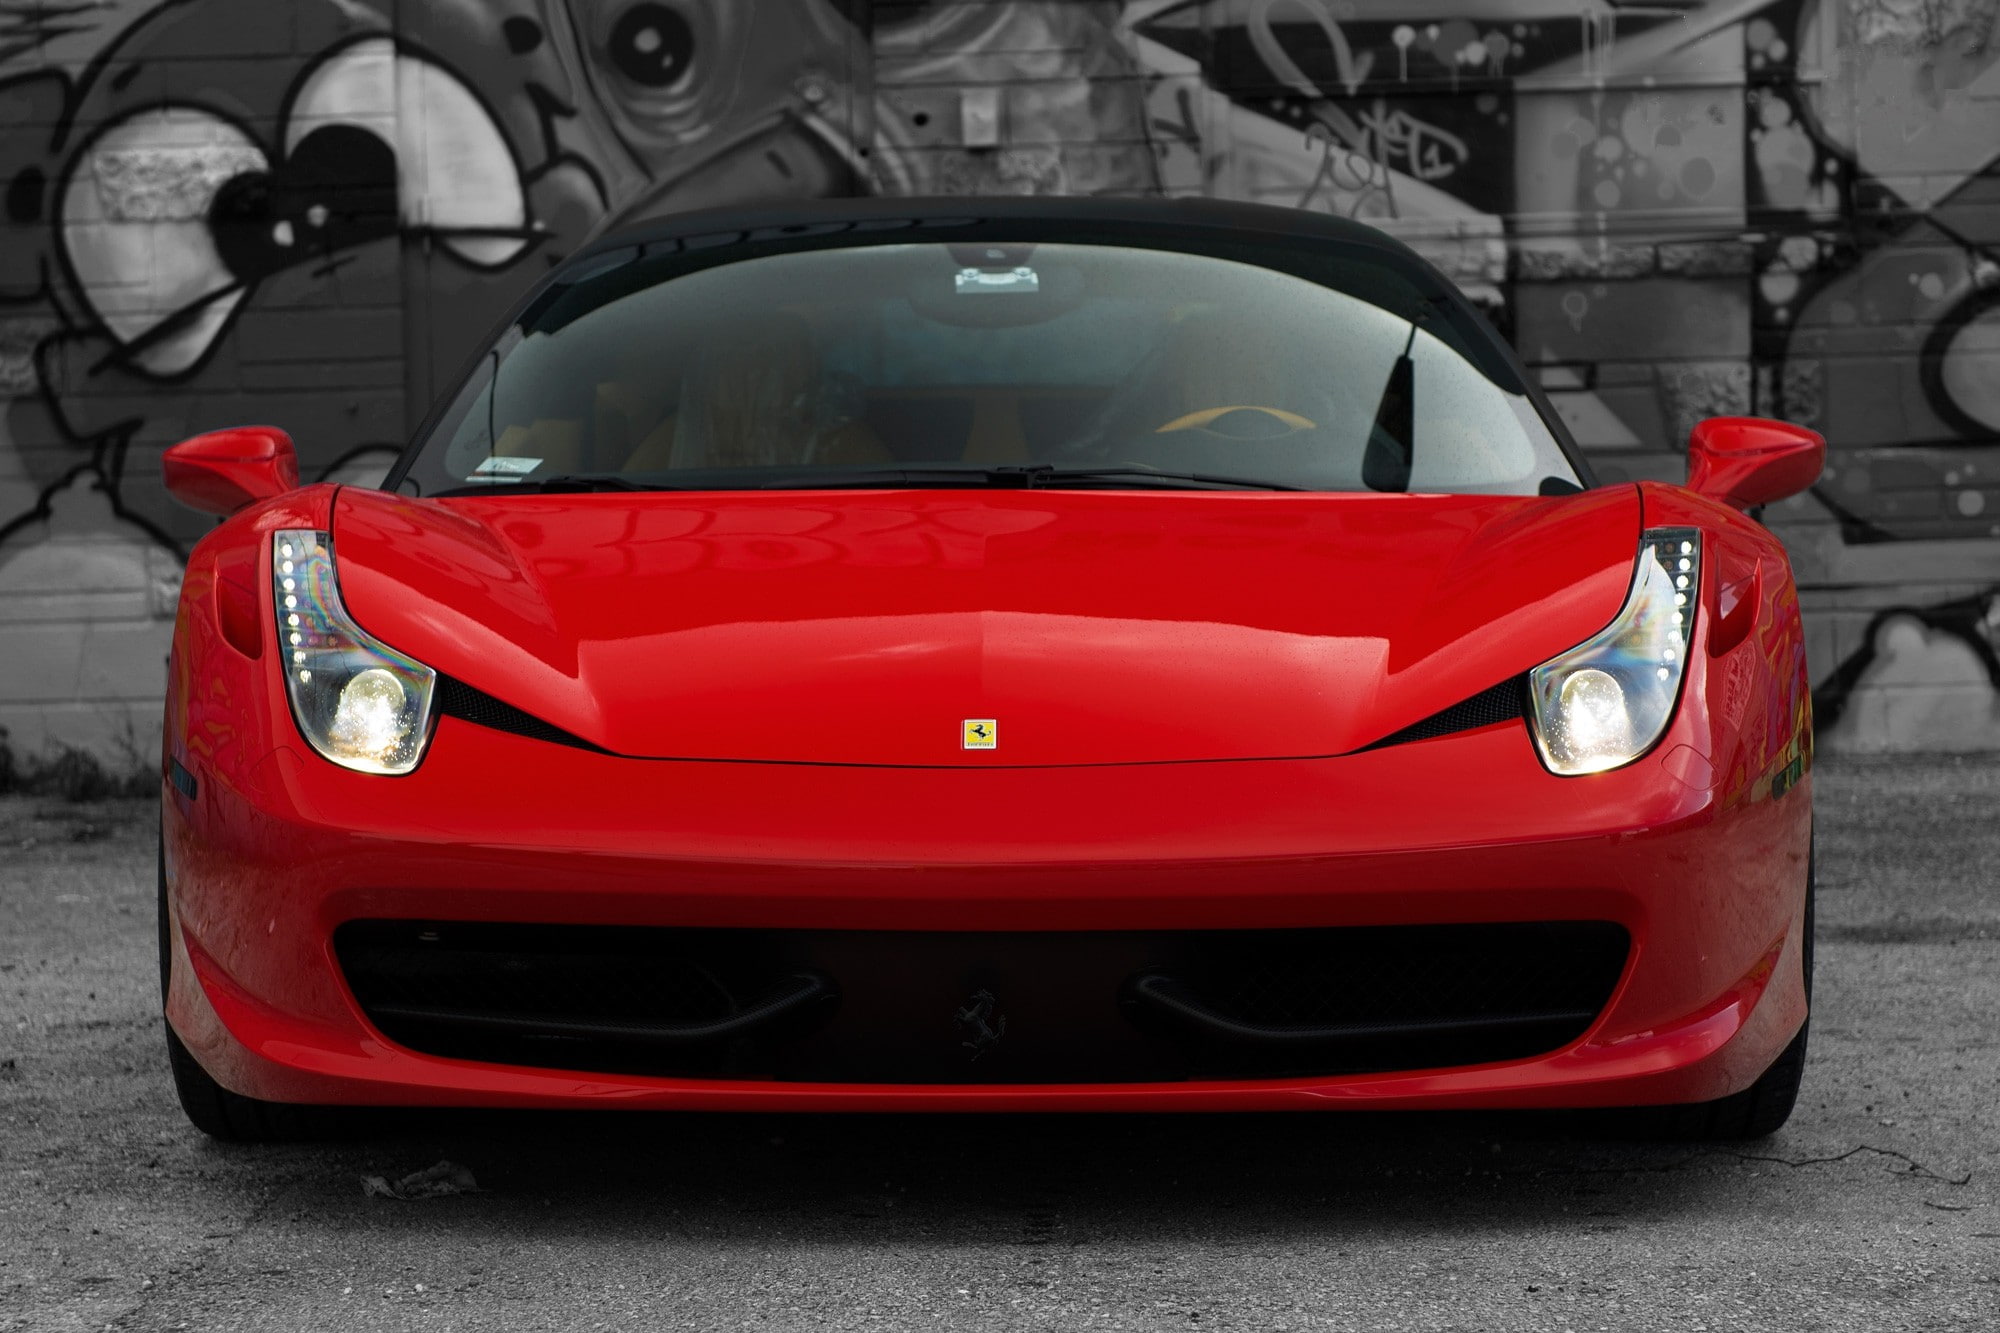 Ferrari 458 Red, 458 italia, Italy, front, headlights, reflection